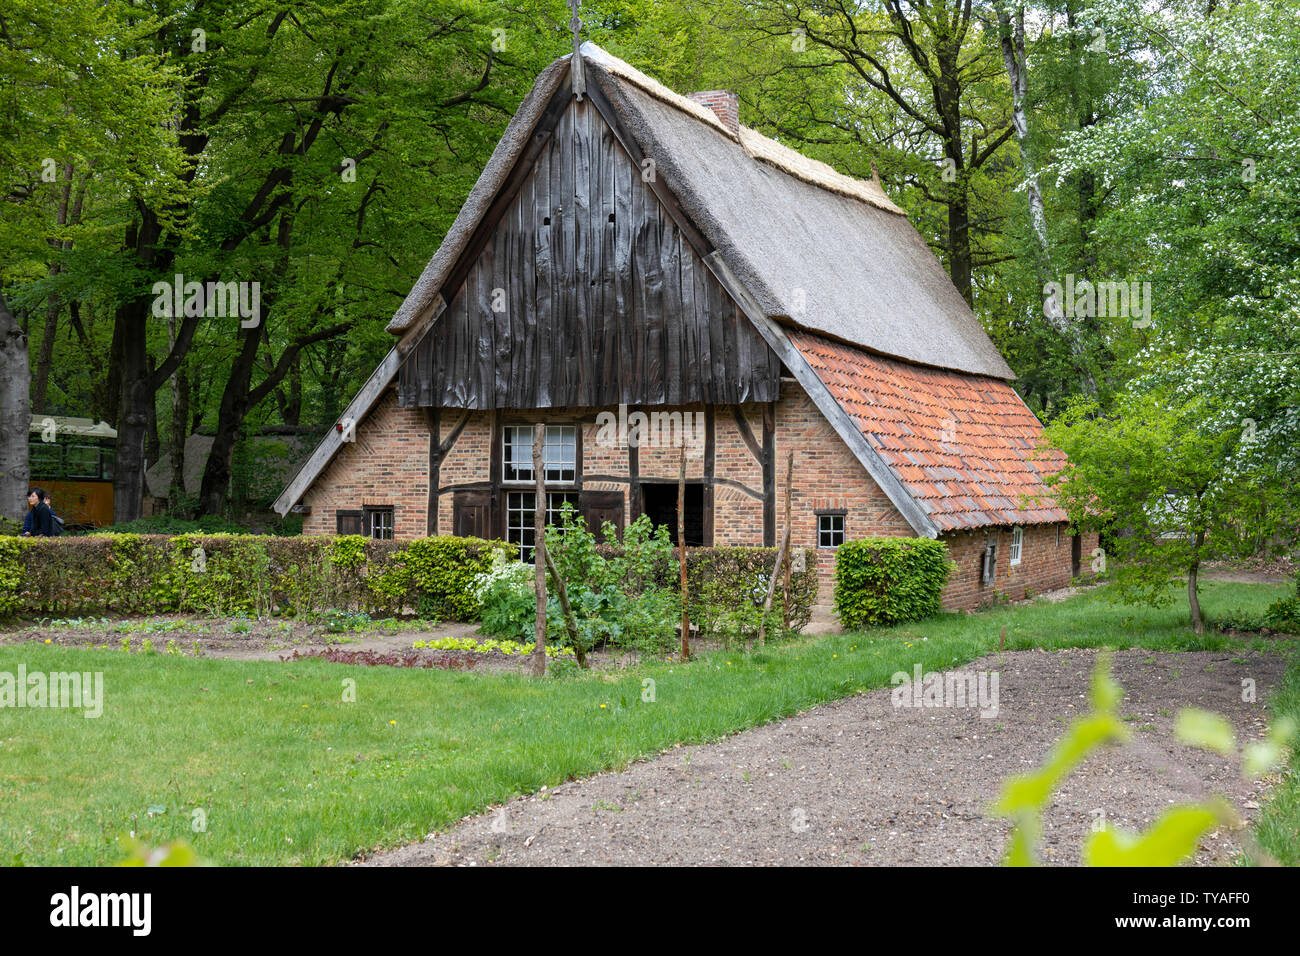 Maison de ferme traditionnelle à Pays-bas Open Air Museum. Un beau jour,  l'affichage de la culture, de l'architecture et des anciens Pays-Bas  livelyhoods Photo Stock - Alamy